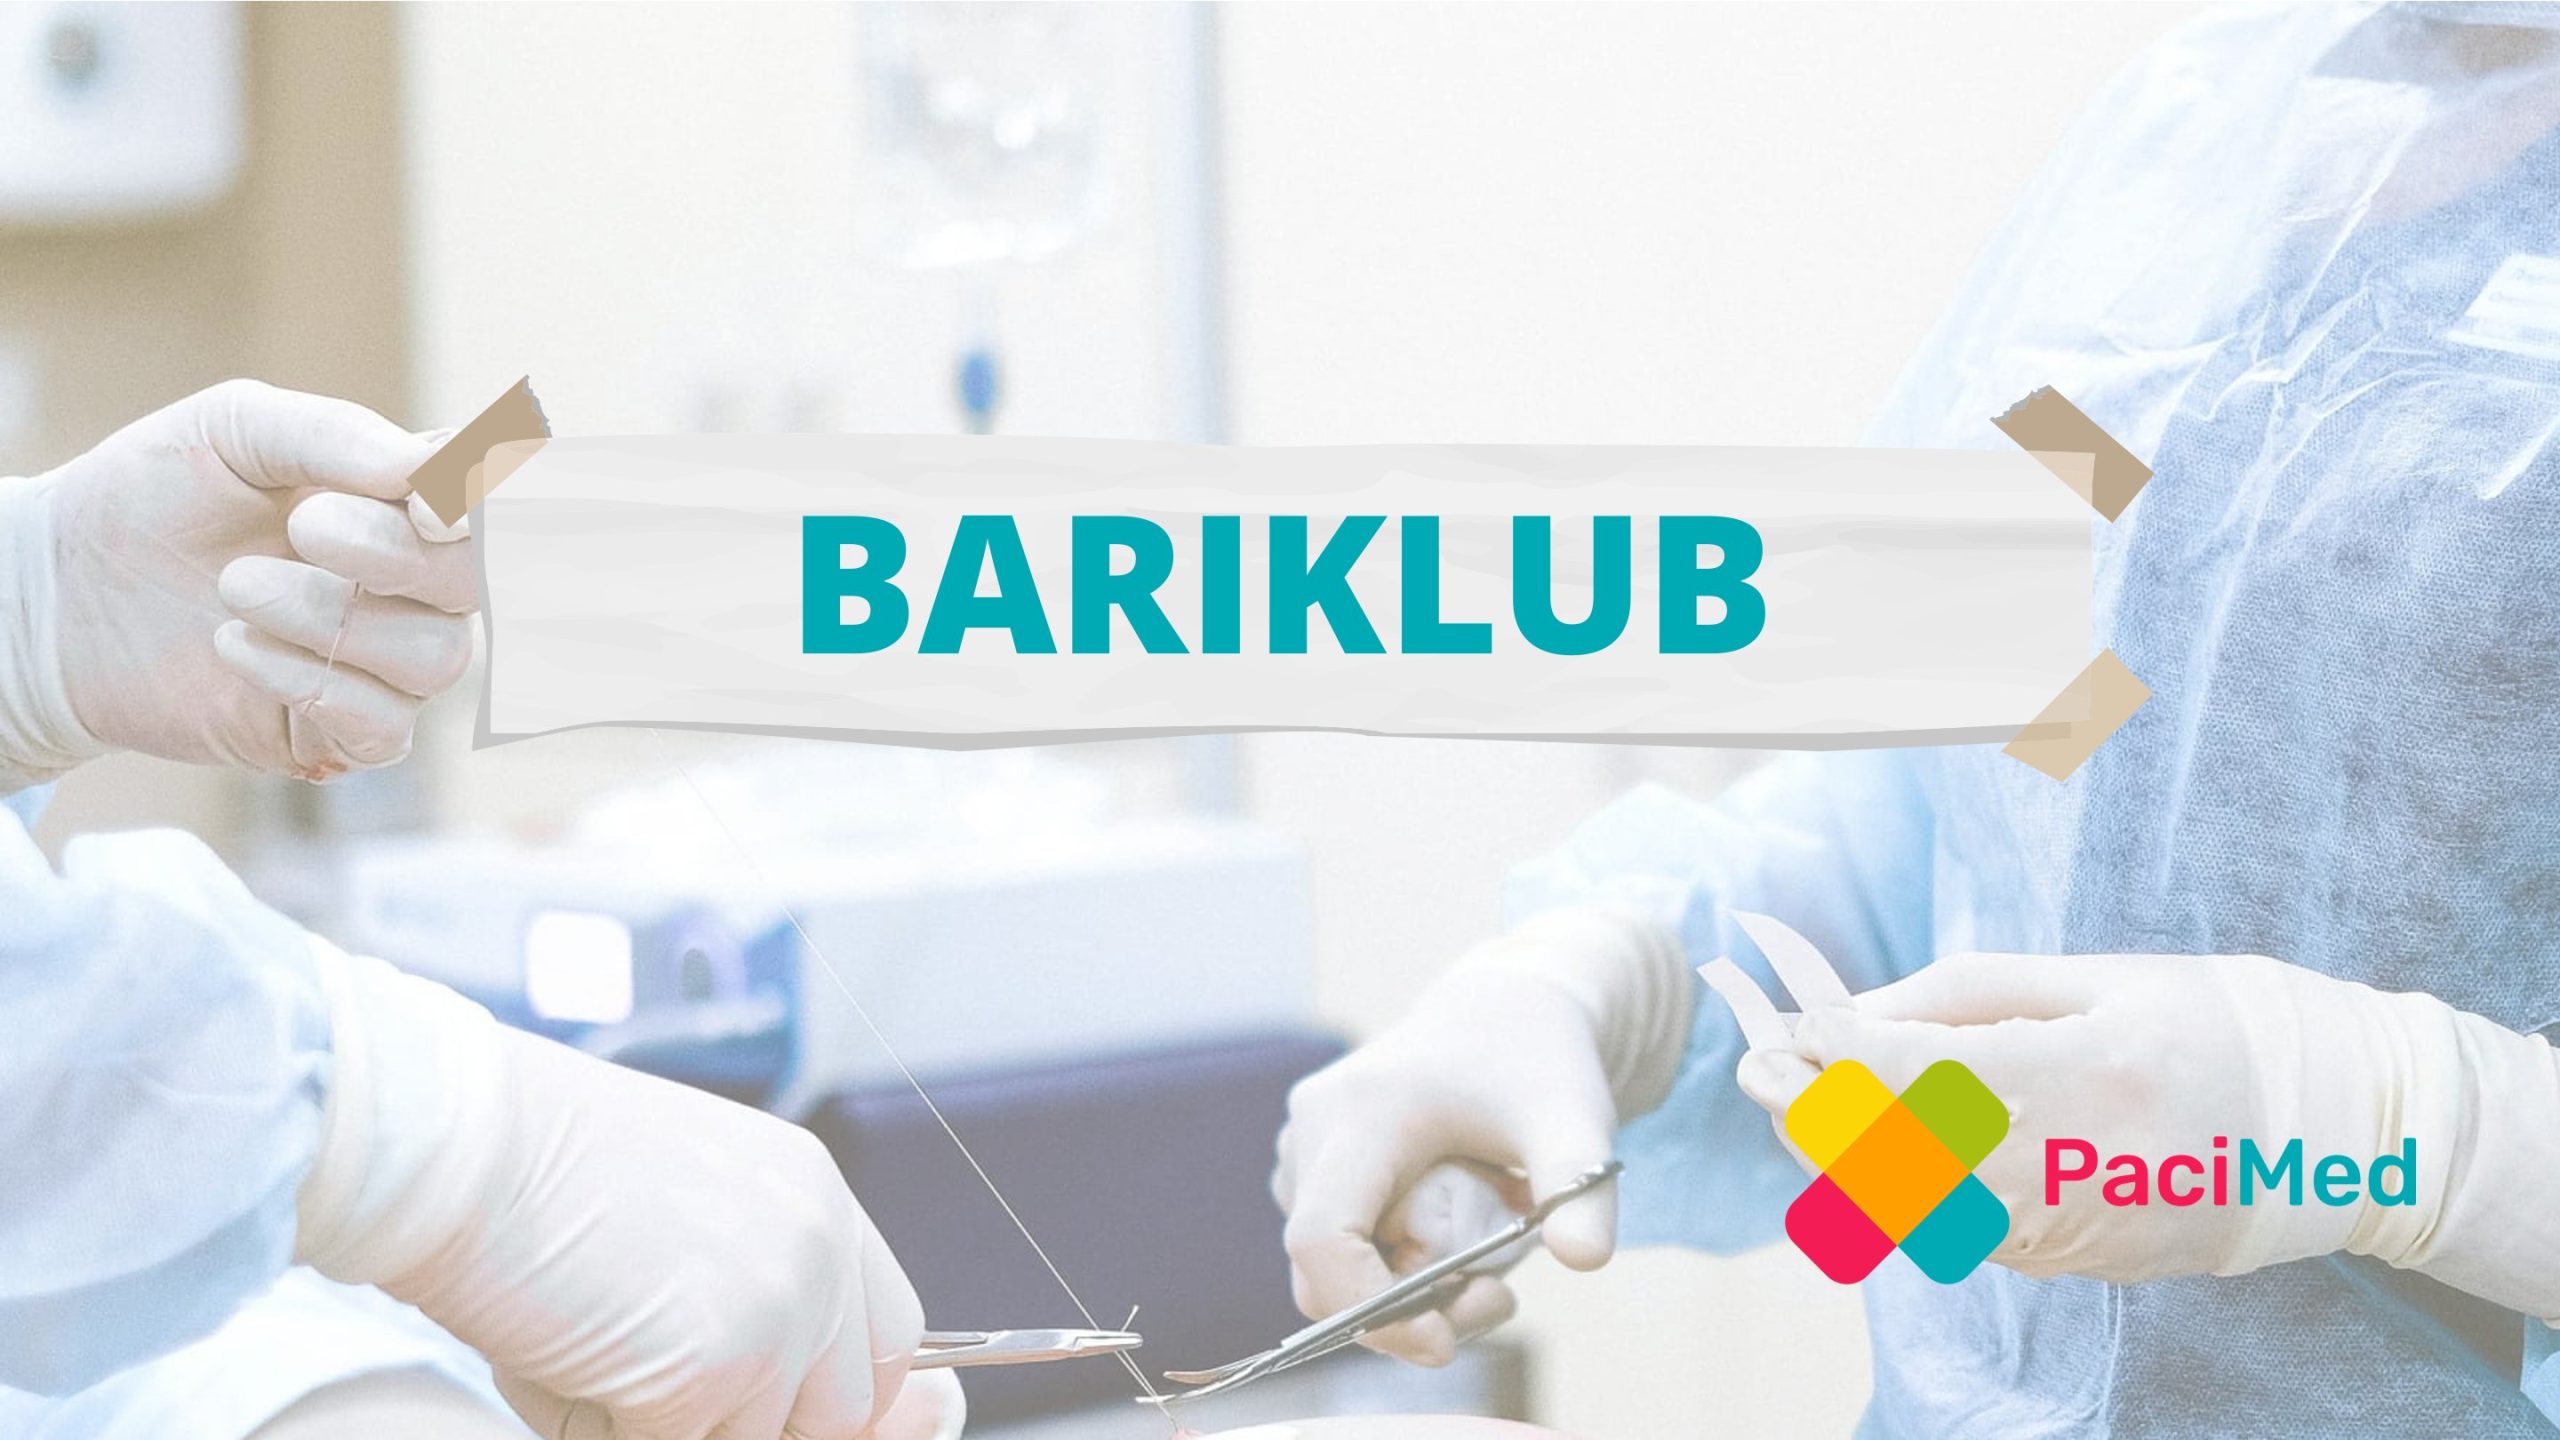 Bari klub – Setkání pacientů před a po bariatrické operaci